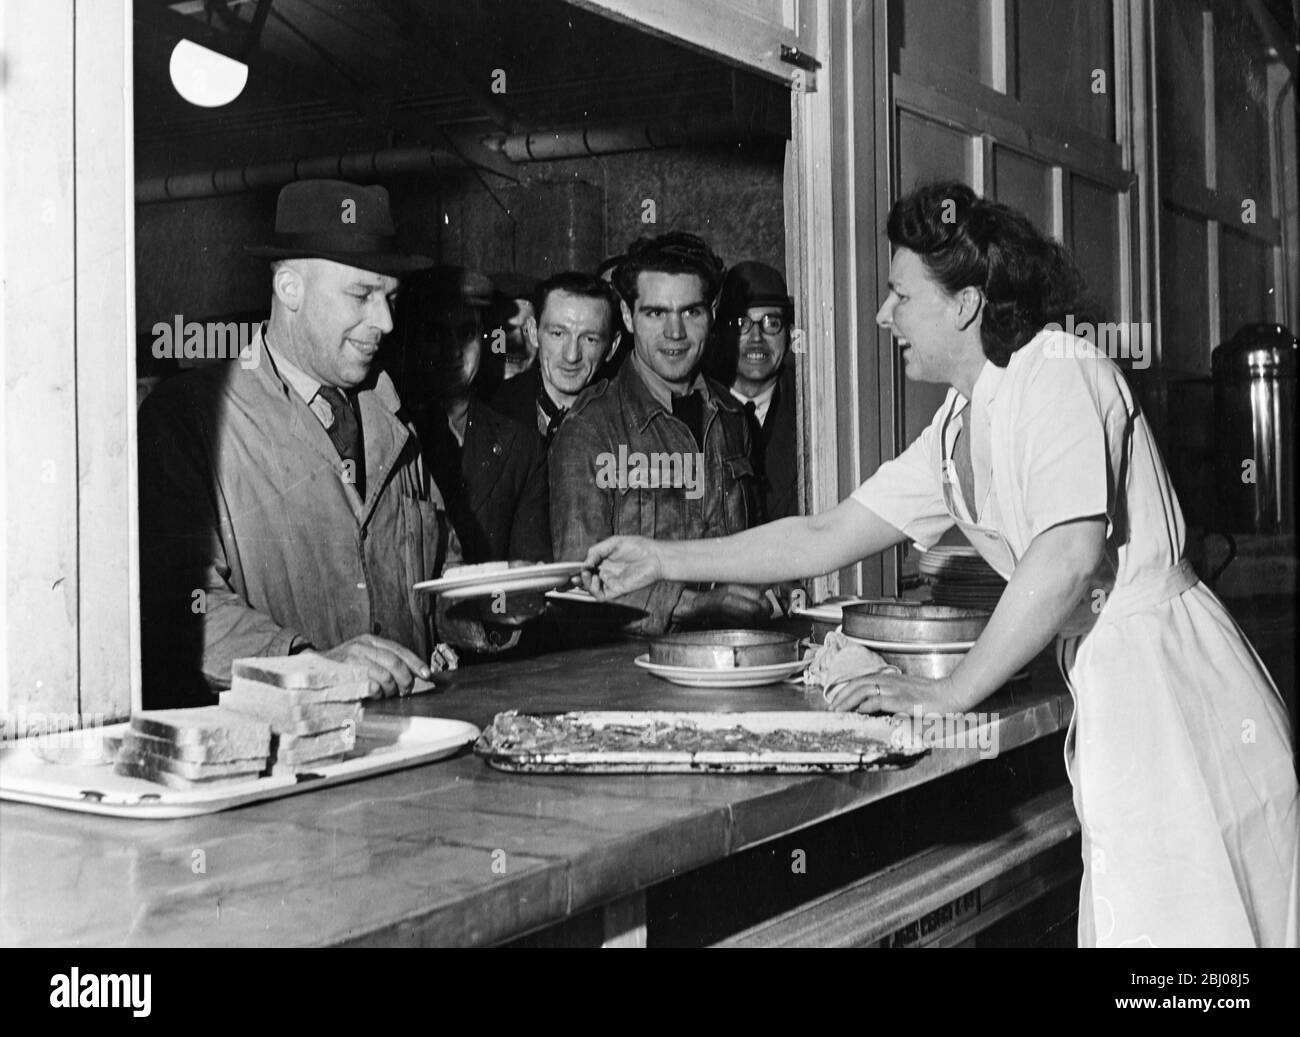 La mensa all'Austin Motor Works dove i lavoratori si accodano per essere serviti. - Longbridge, Birmingham, Inghilterra - 1947 - Foto Stock